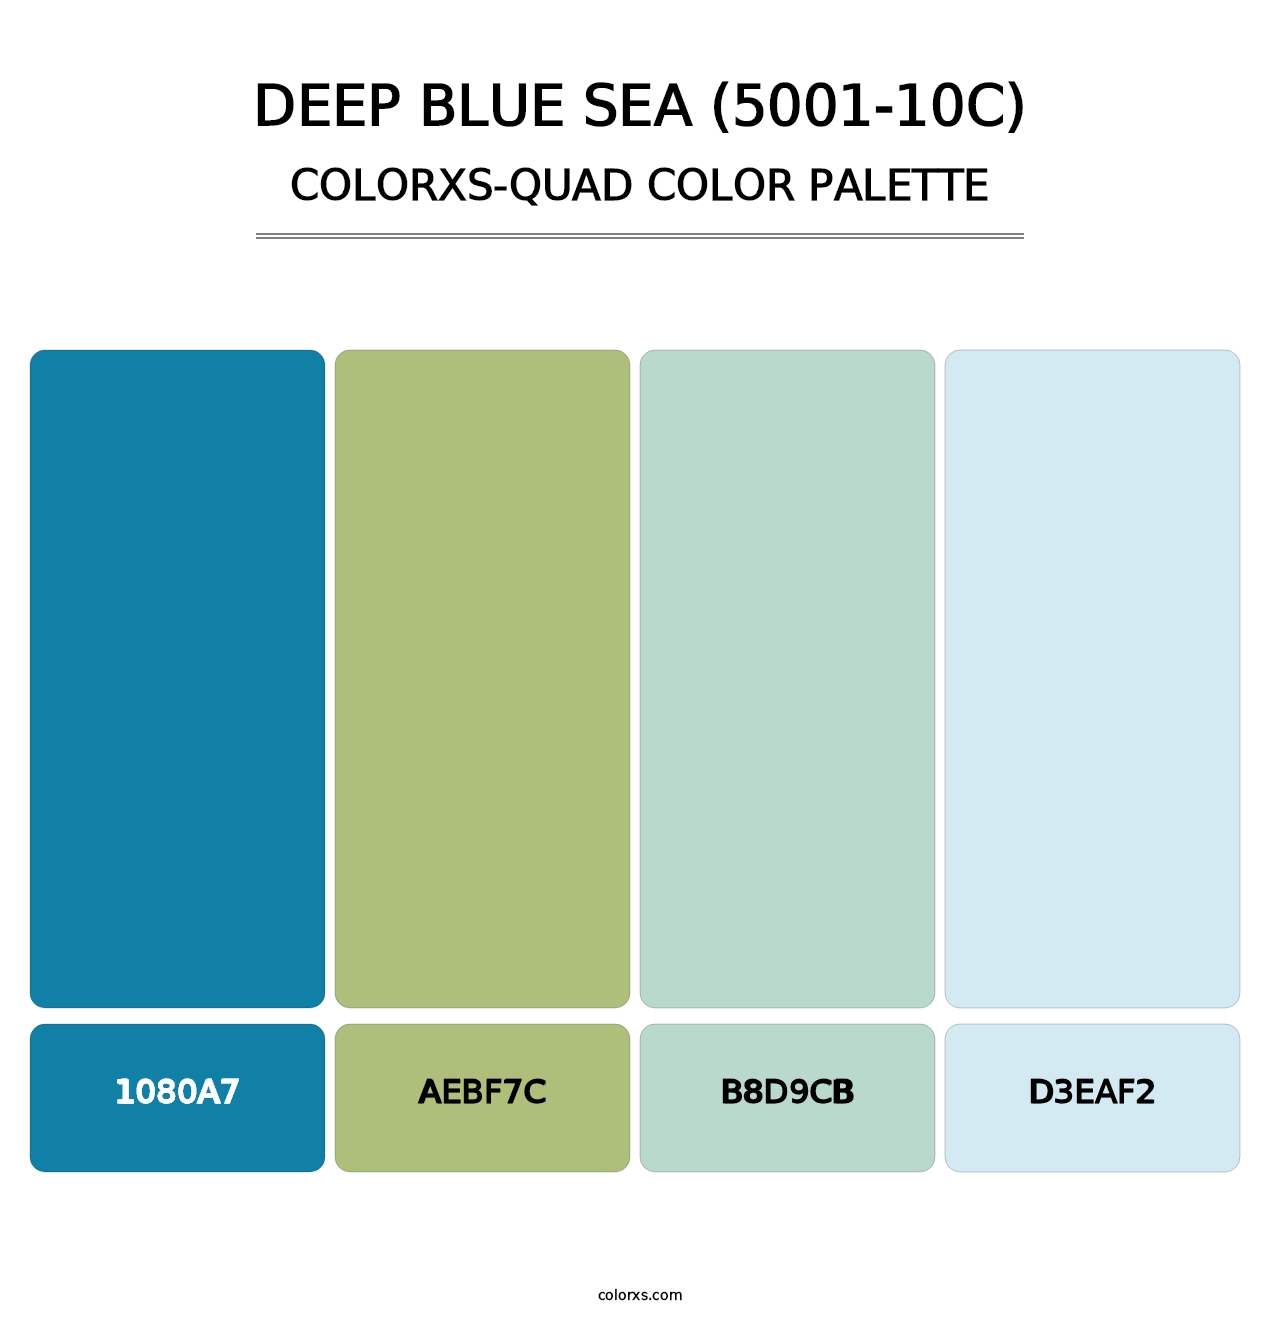 Deep Blue Sea (5001-10C) - Colorxs Quad Palette